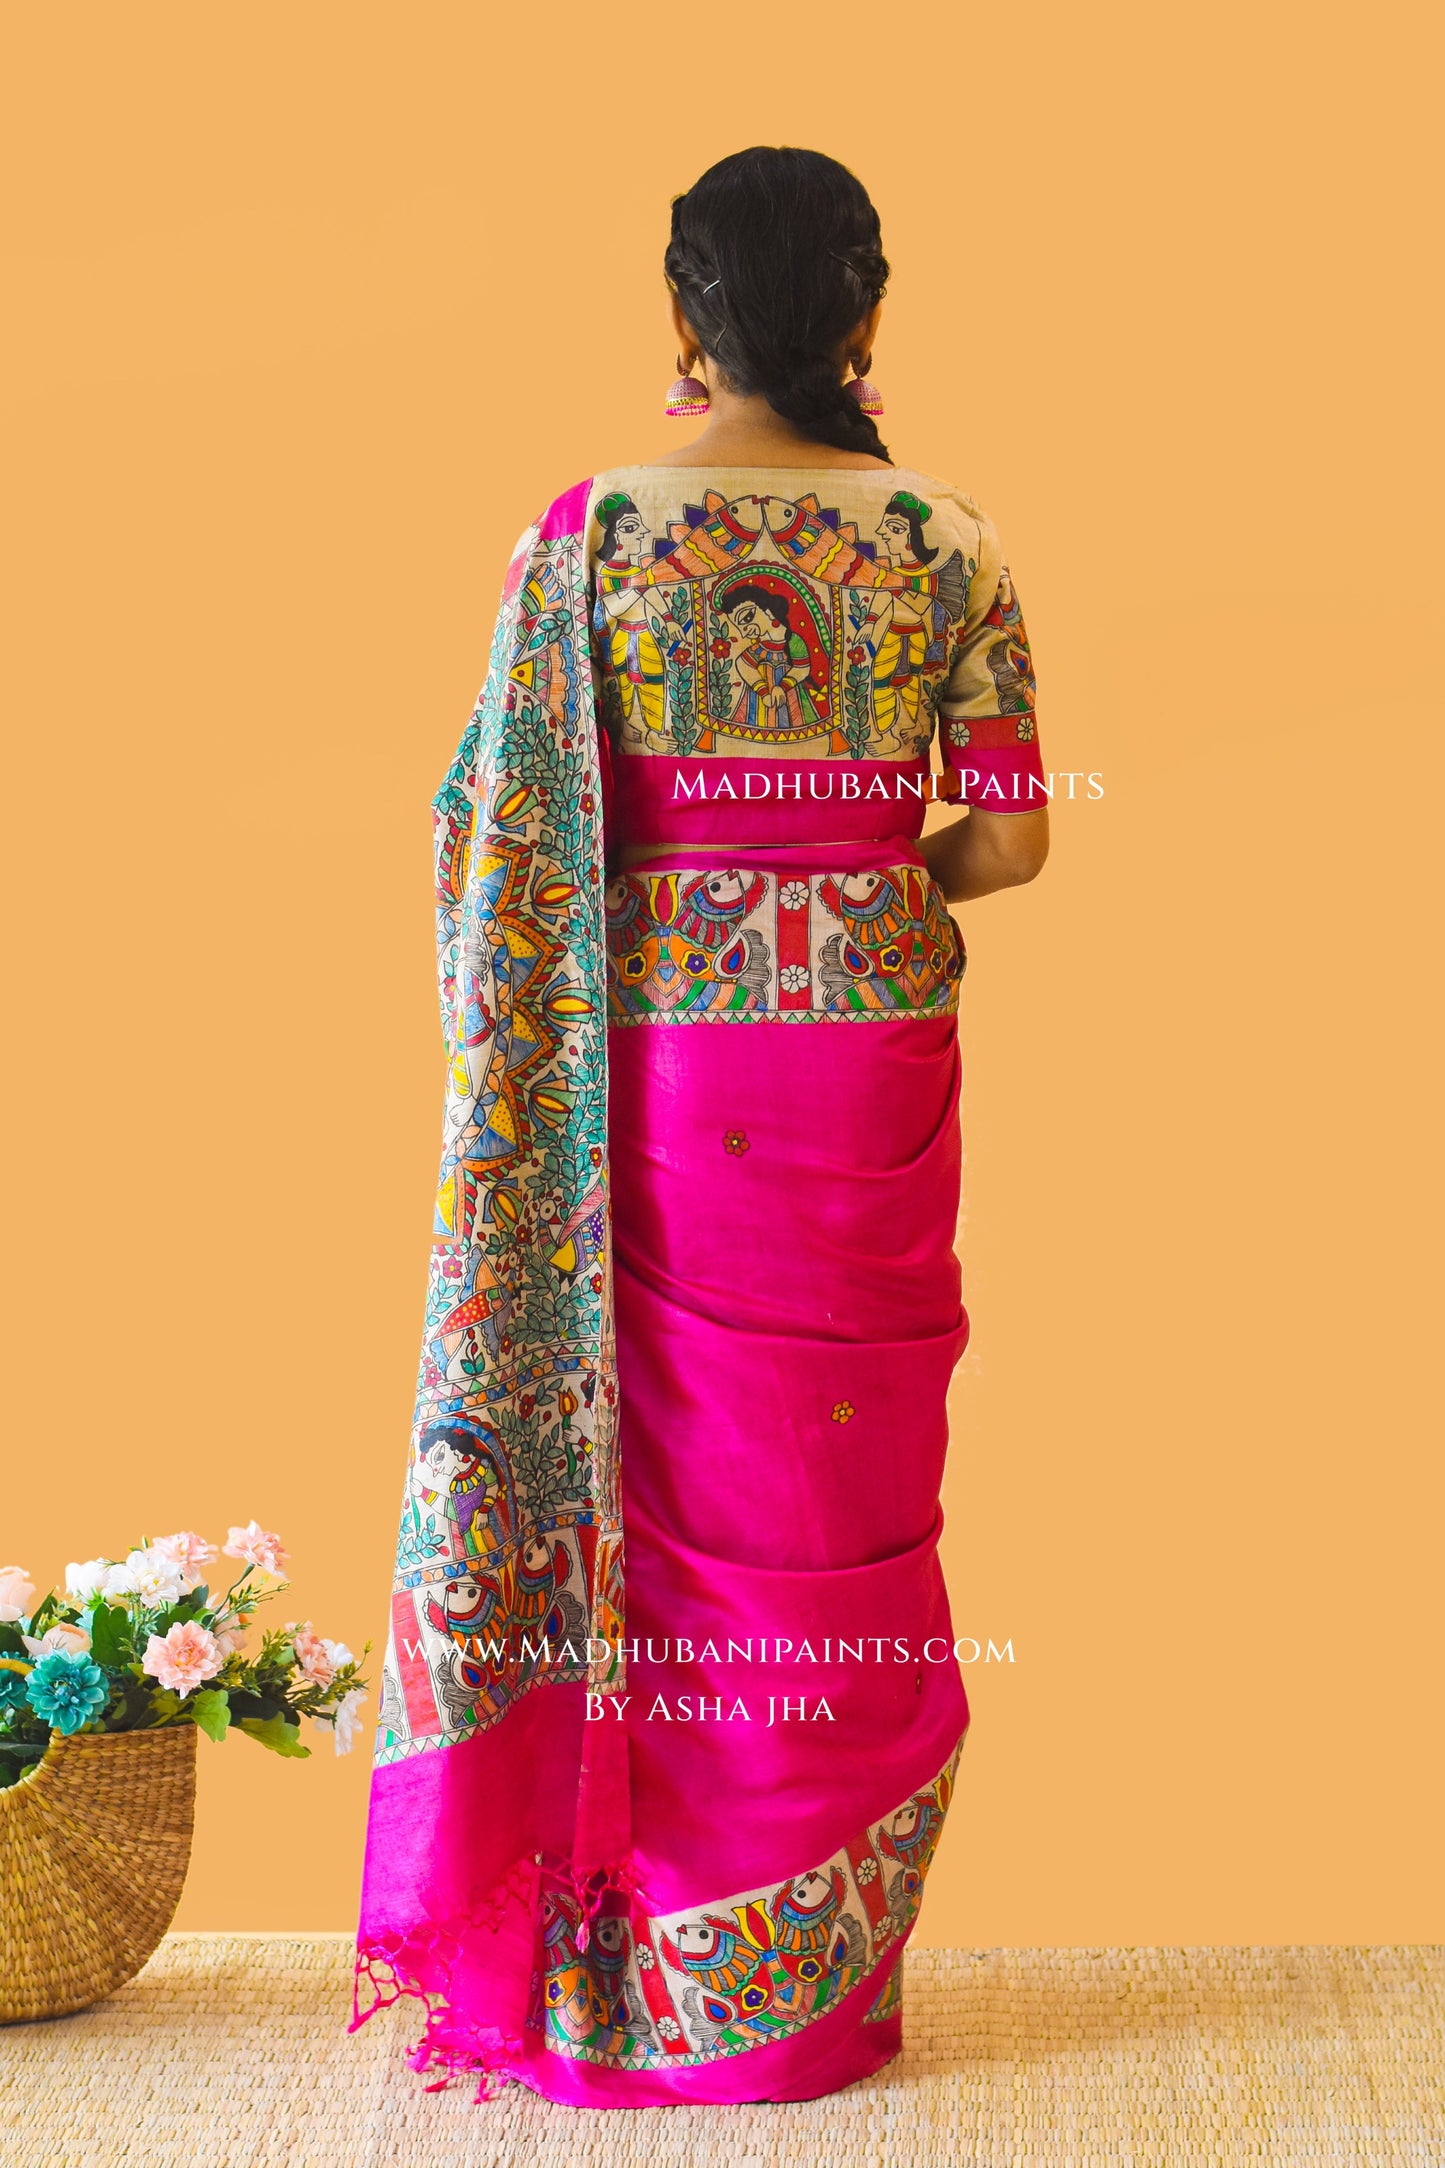 PAVAN VIVAAH Hand-painted Madhubani Tussar Silk Saree Blouse Set